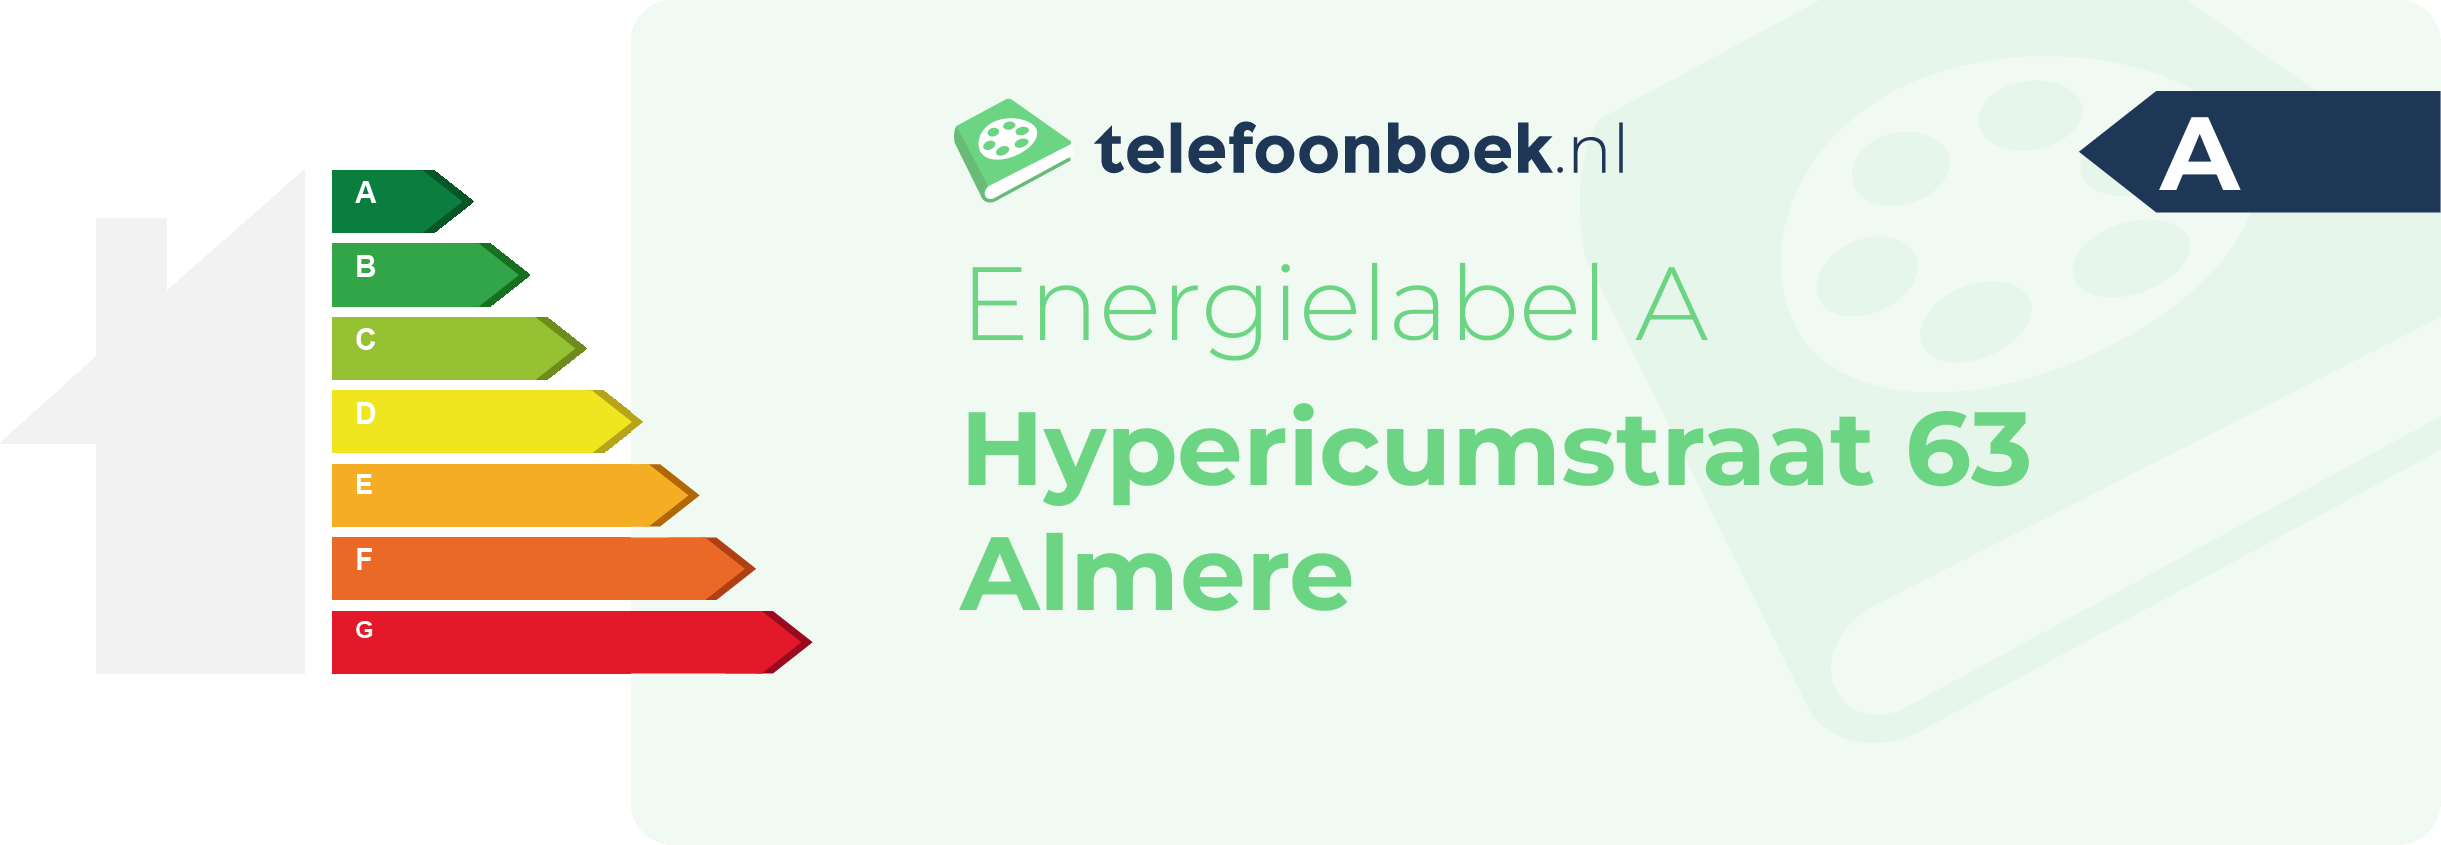 Energielabel Hypericumstraat 63 Almere